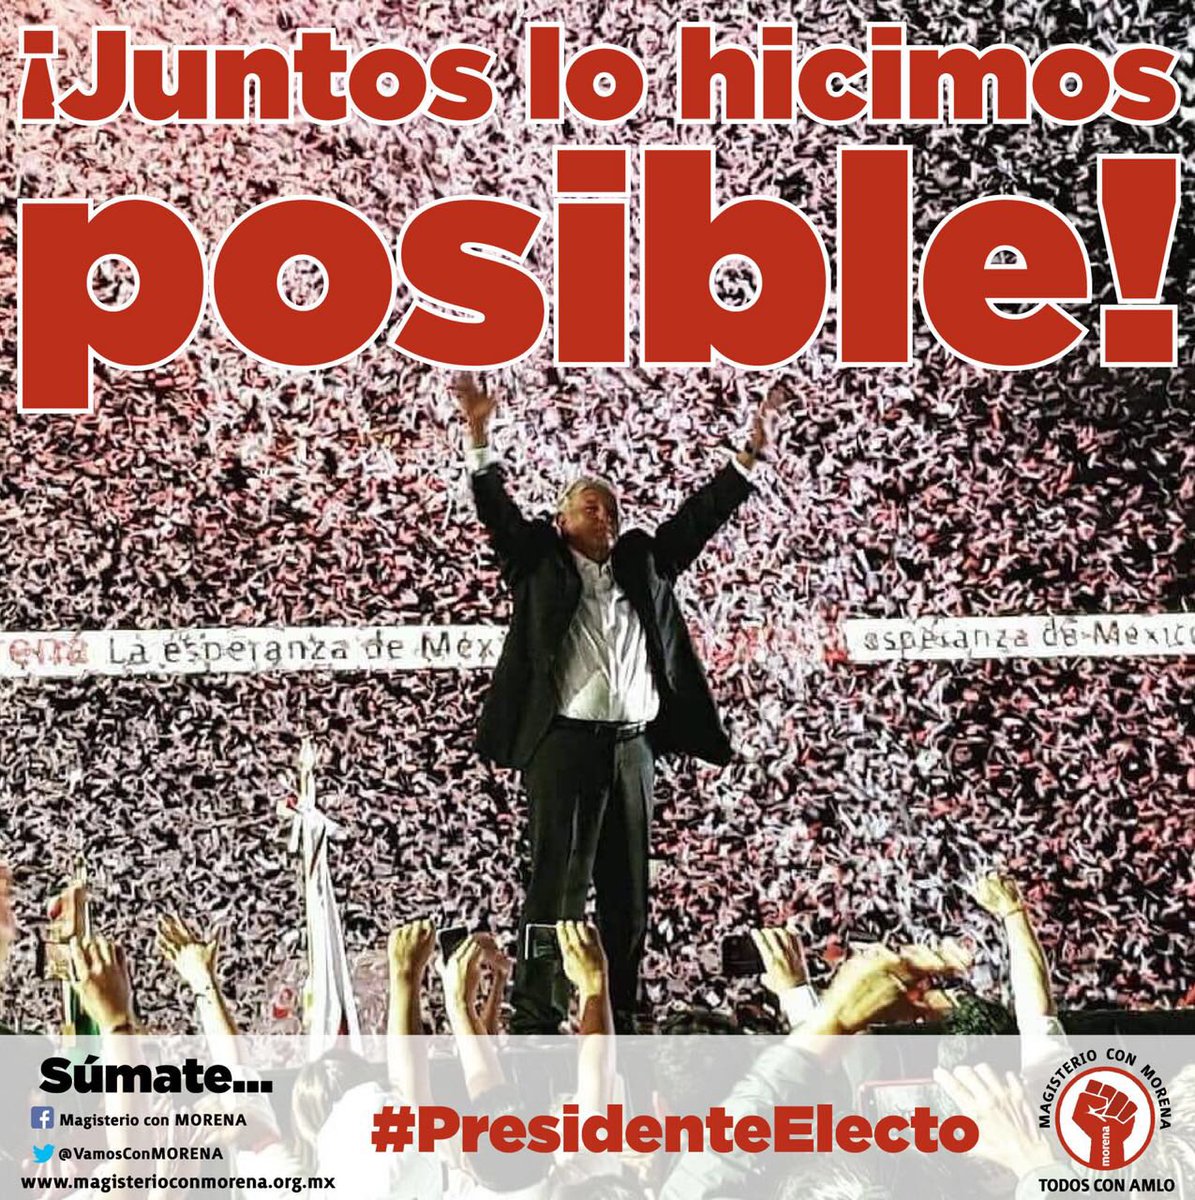 #JuntosLoHicimosposible @lopezobrador_ #PresidenteElecto #AMLOPresidenteElecto #AMLO2018 #VamosATransformarAMexico